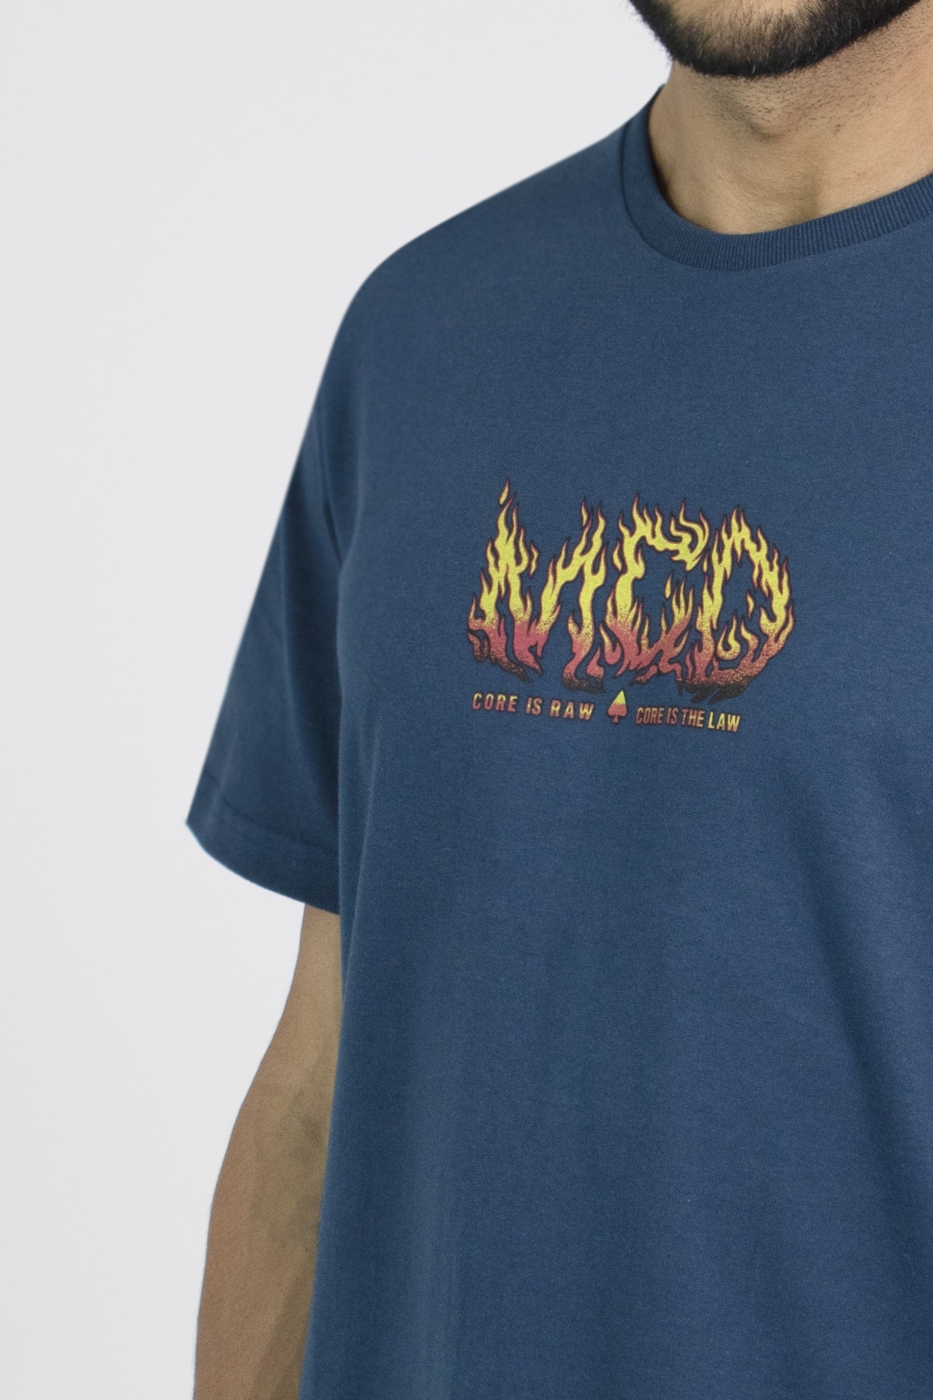 T-shirt Regular Mcd Molotov MCD